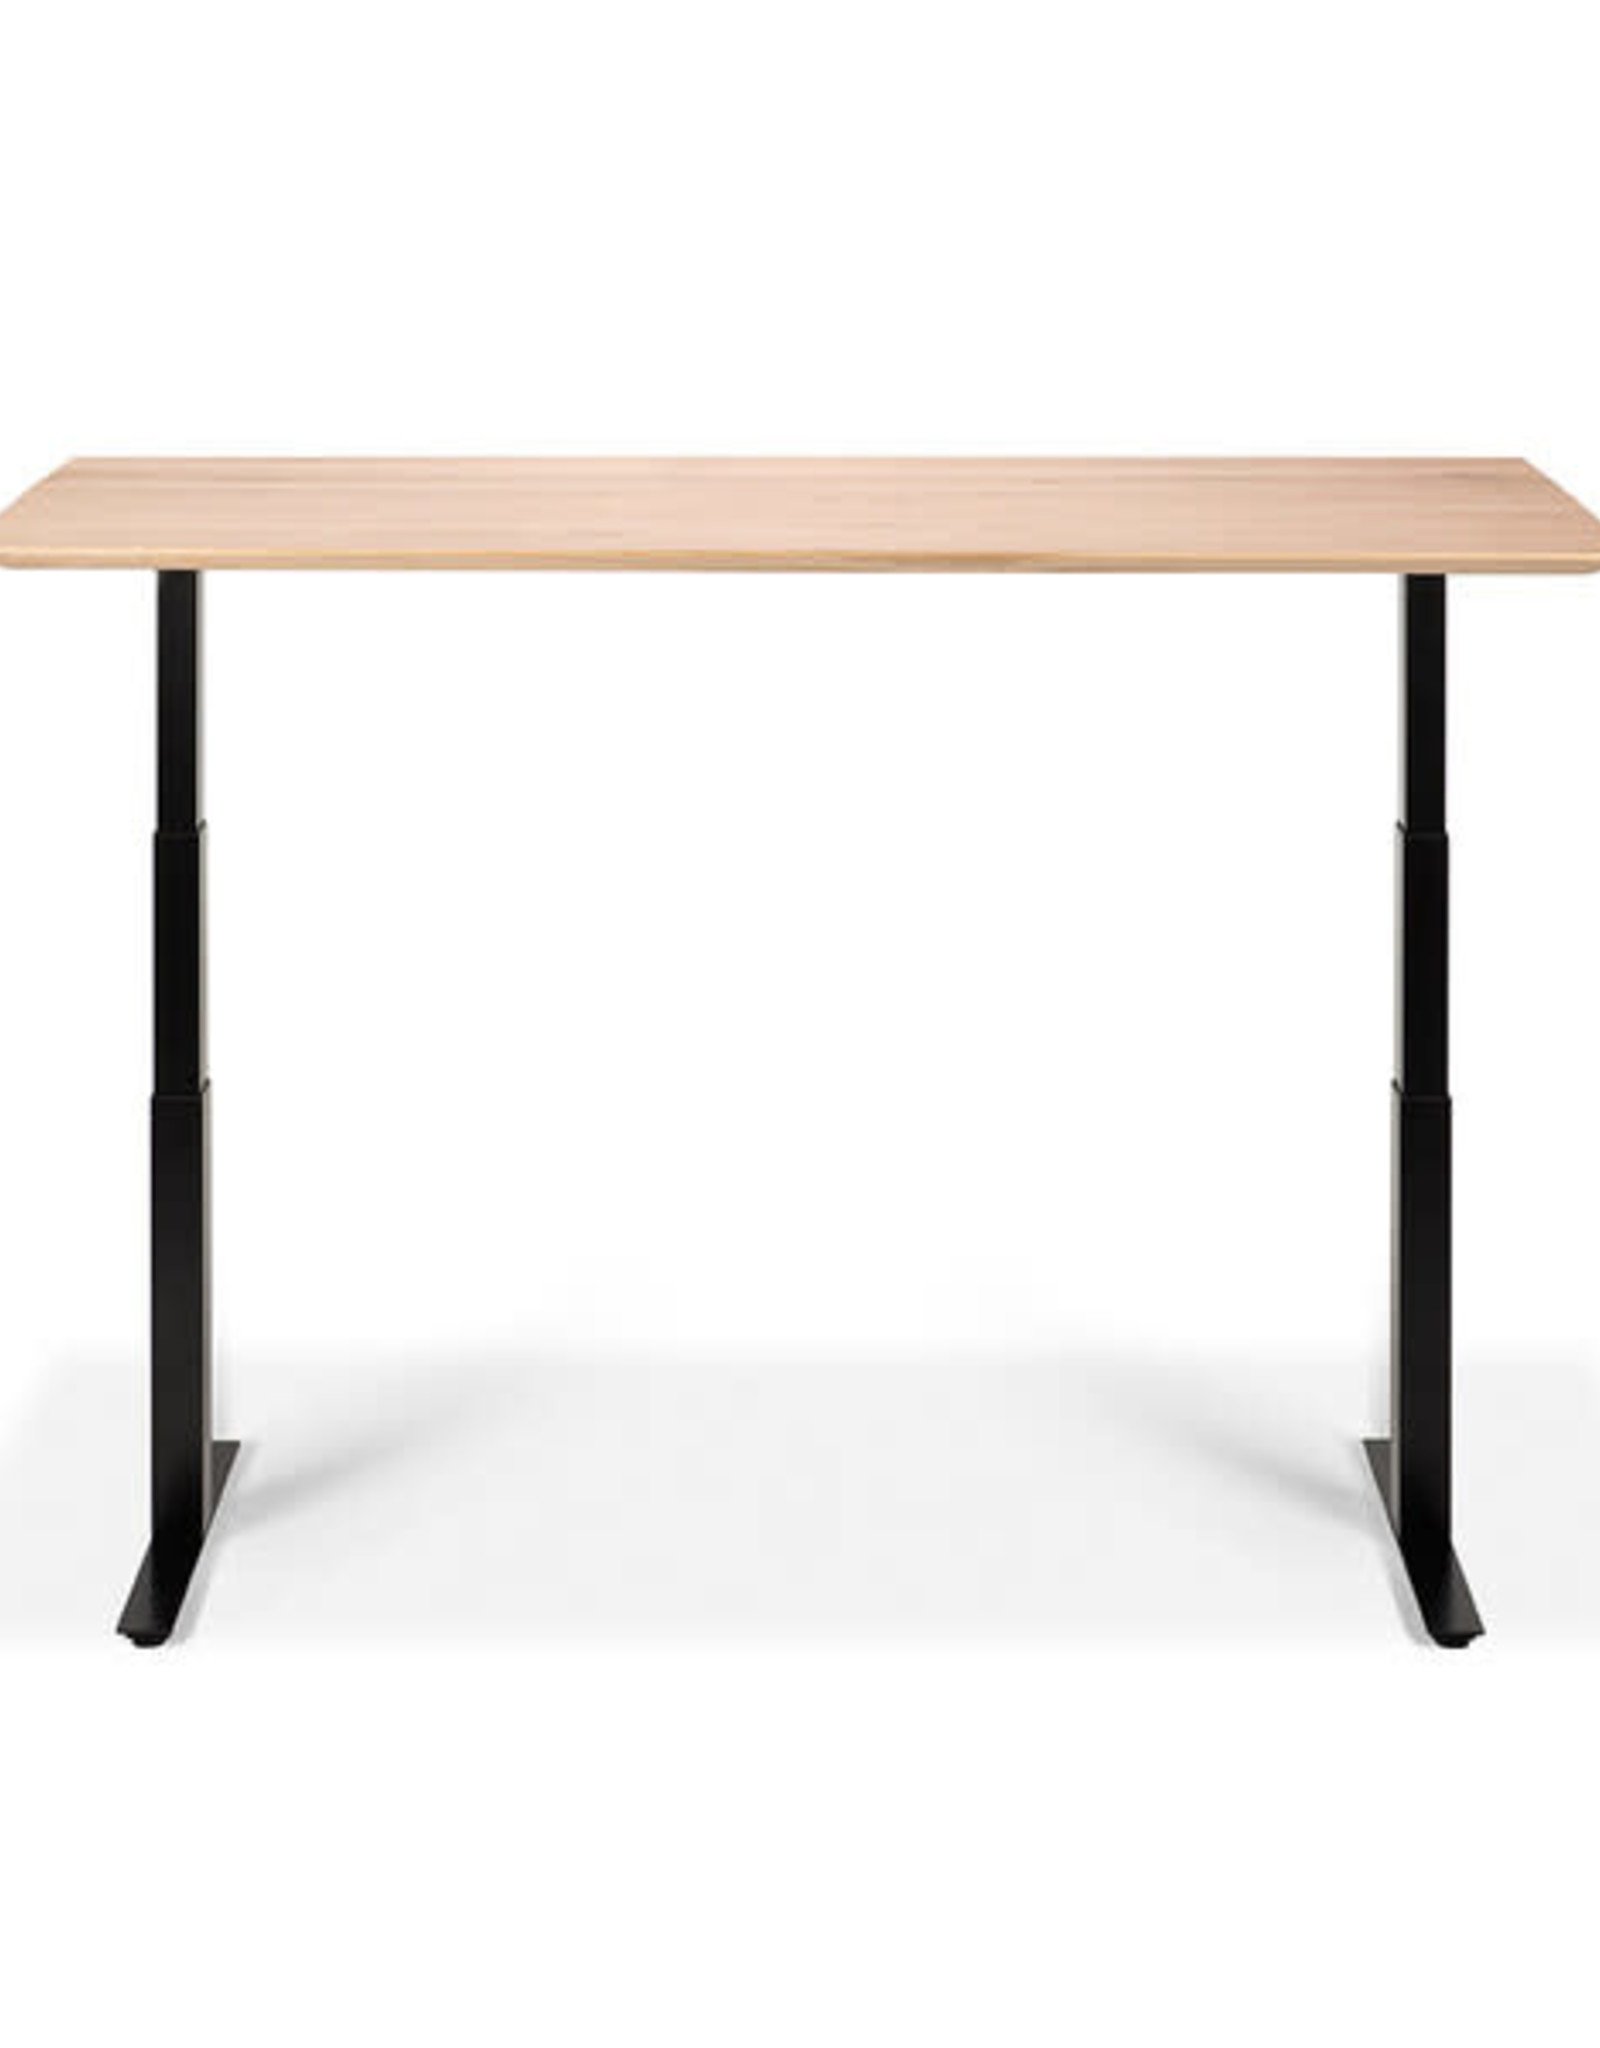 Oak Bok adjustable desk - black frame - US